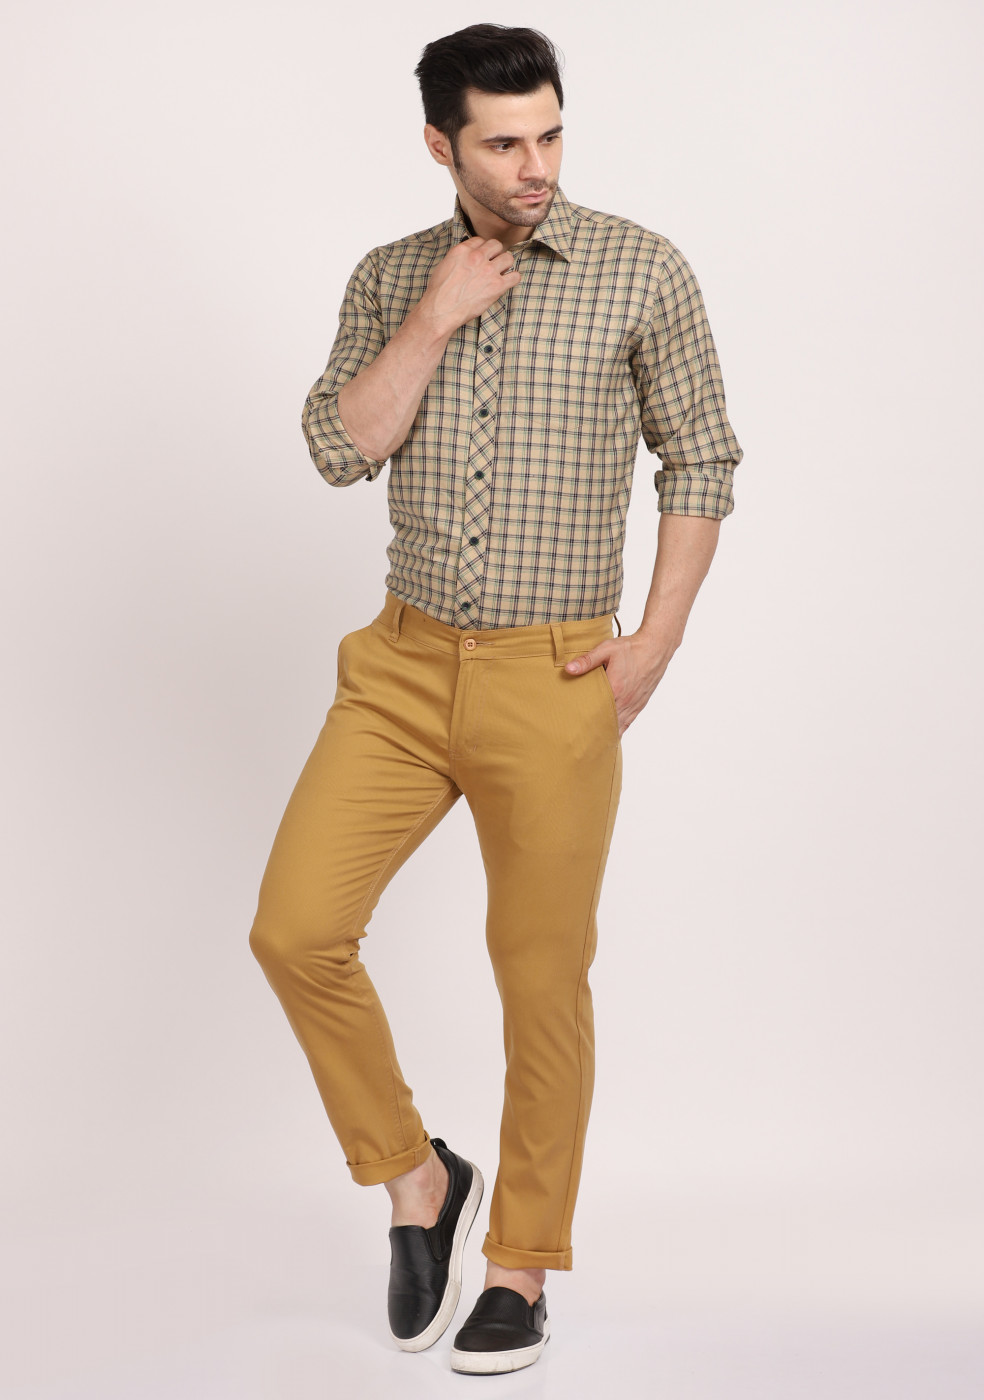 ASHTOM Cotton Khaki Formal Trouser Regular Fit For Men